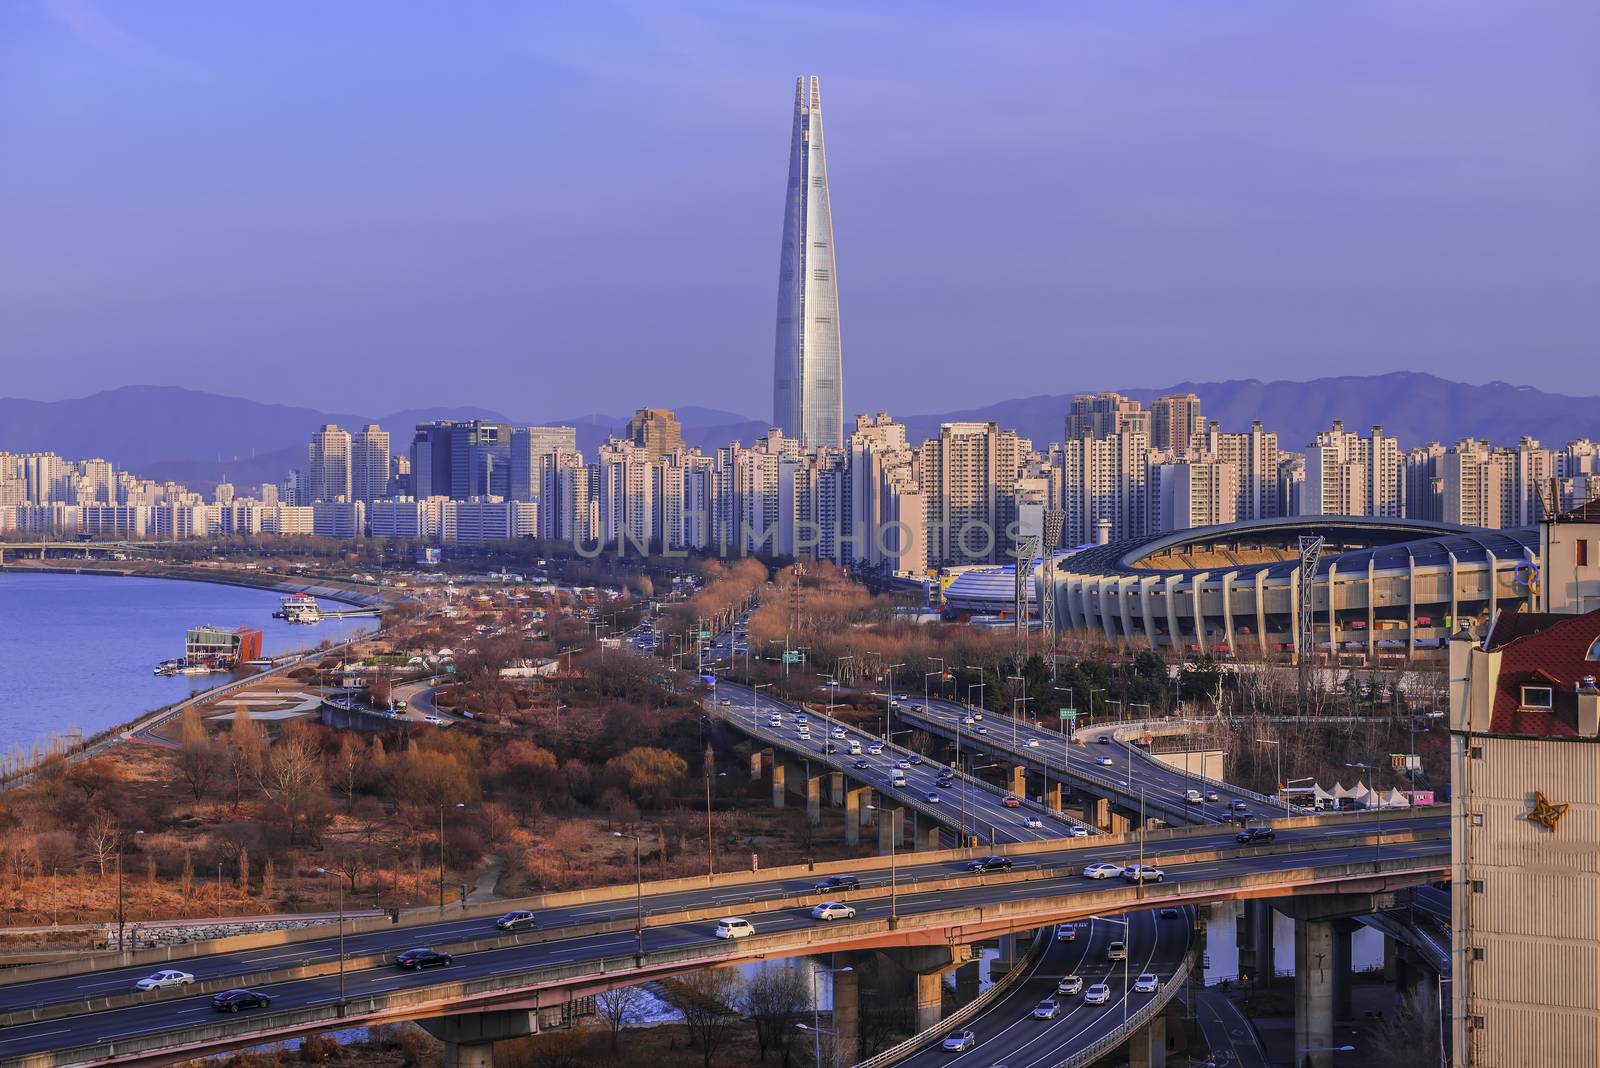 Seoul City Skyline,South Korea by wijitamkapet@gmail.com